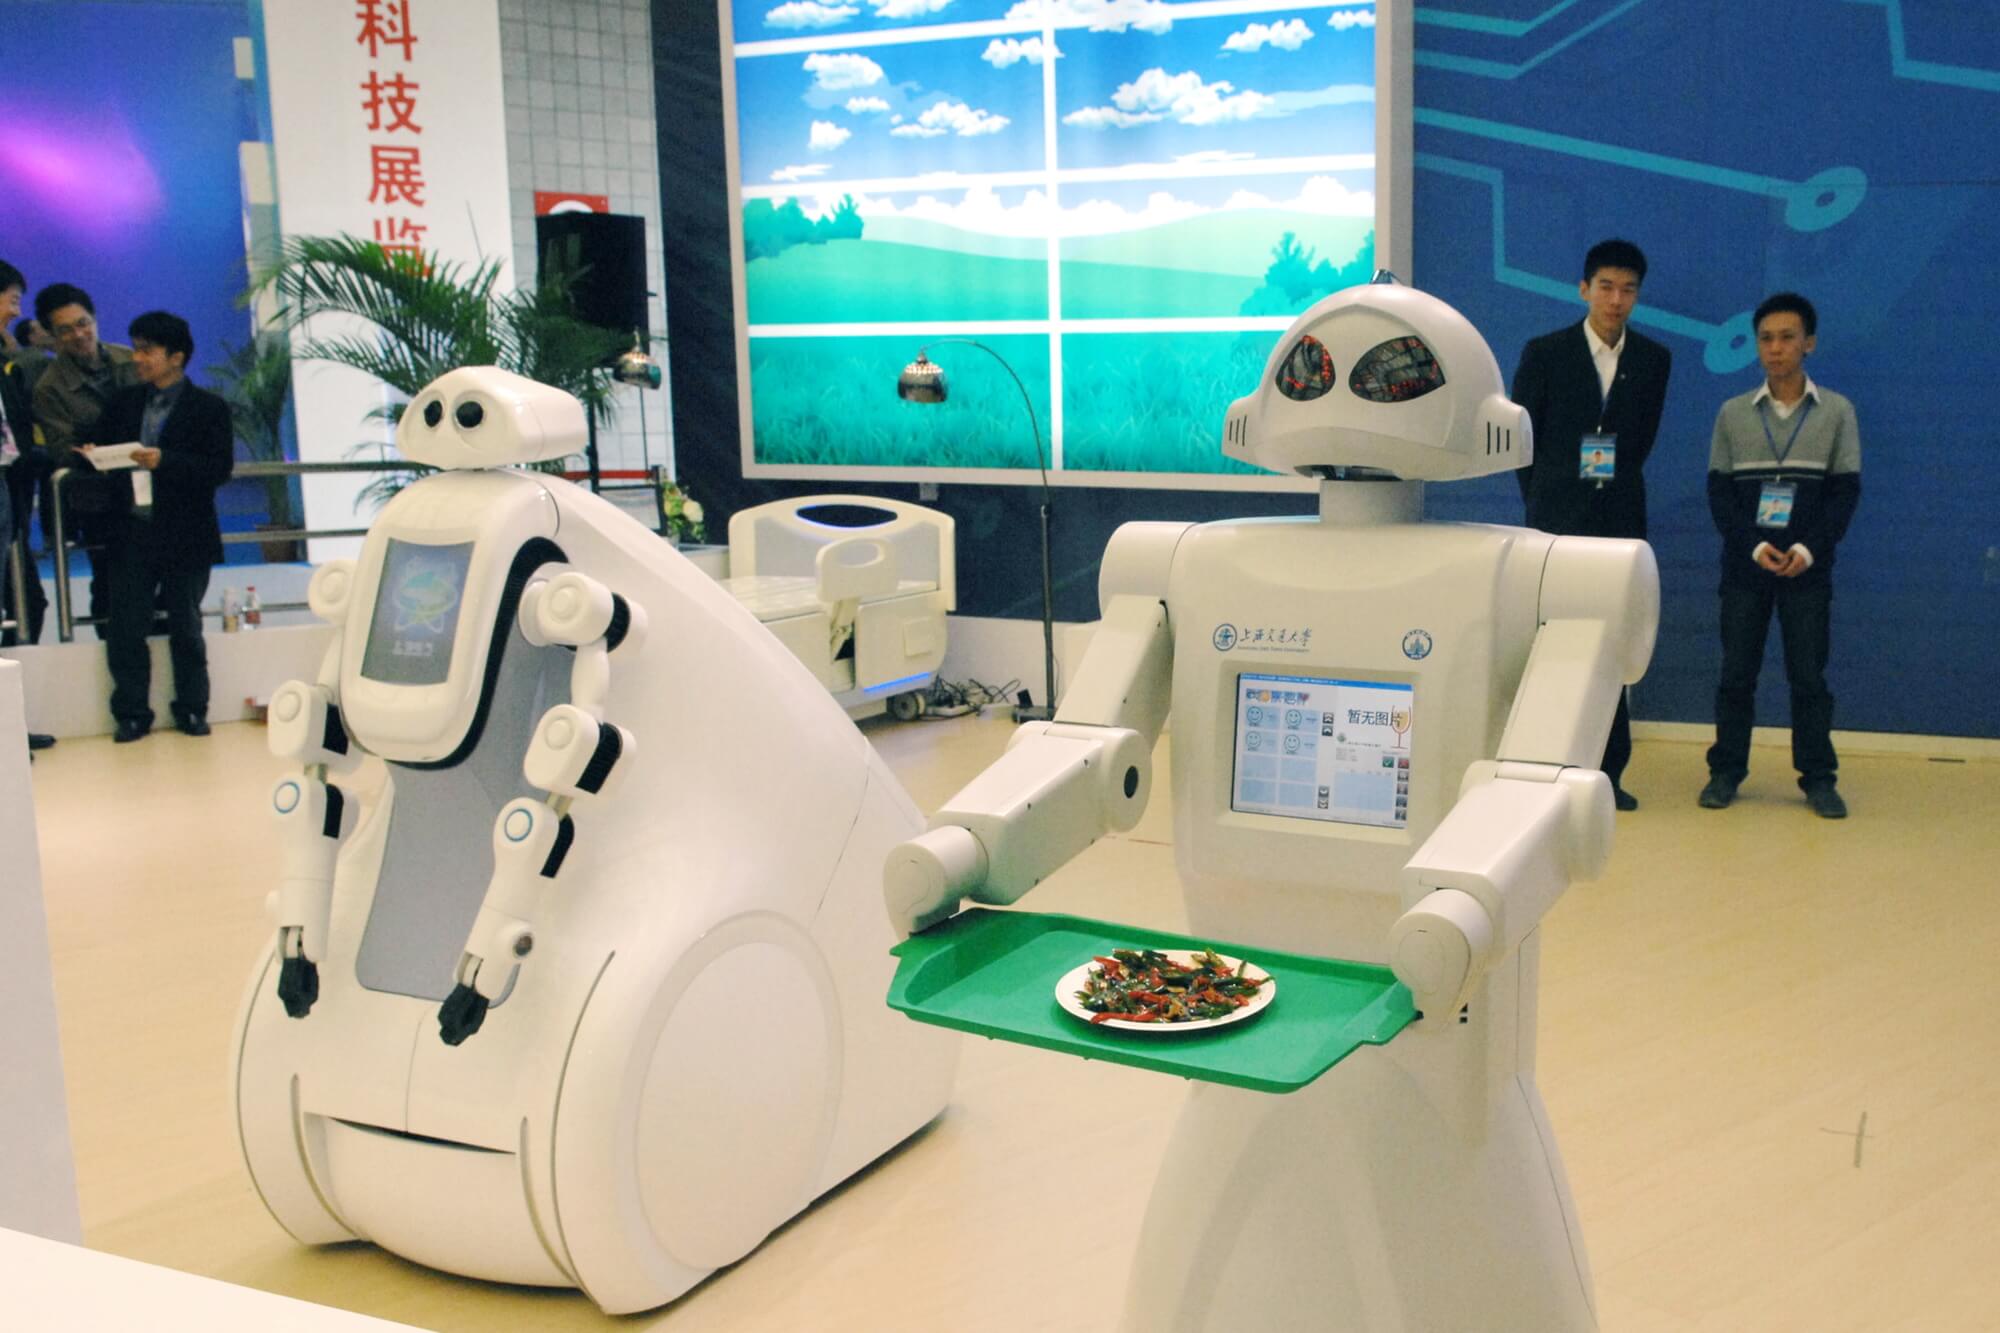 רובוטים המיועדים לשירותים רפואיים, שנחאי 2019. <a href="https://depositphotos.com. ">המחשה: depositphotos.com</a>